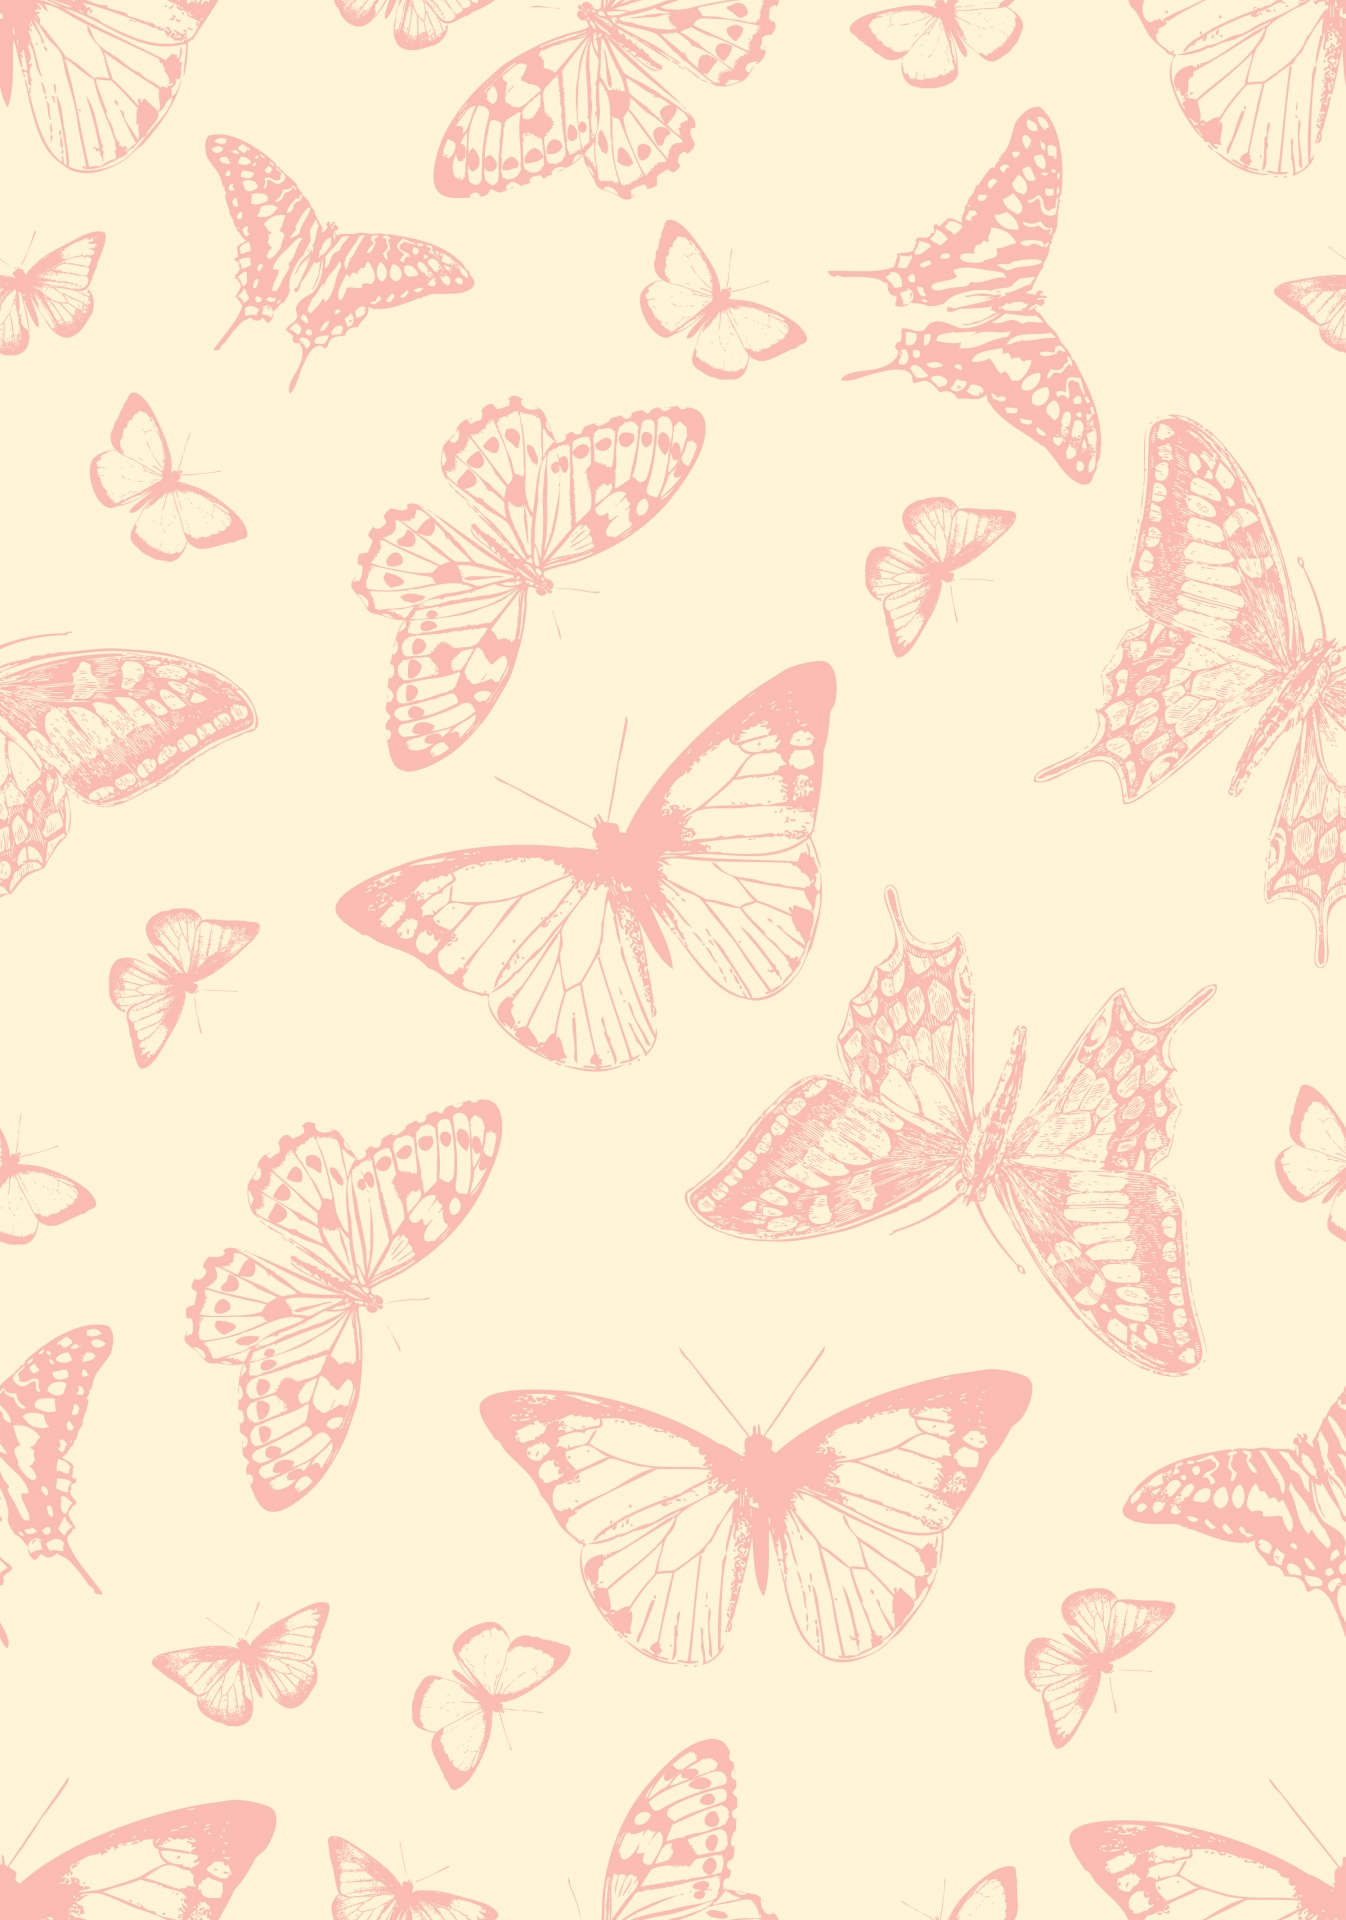 Butterflies, butterfly, wallpaper, paper, background